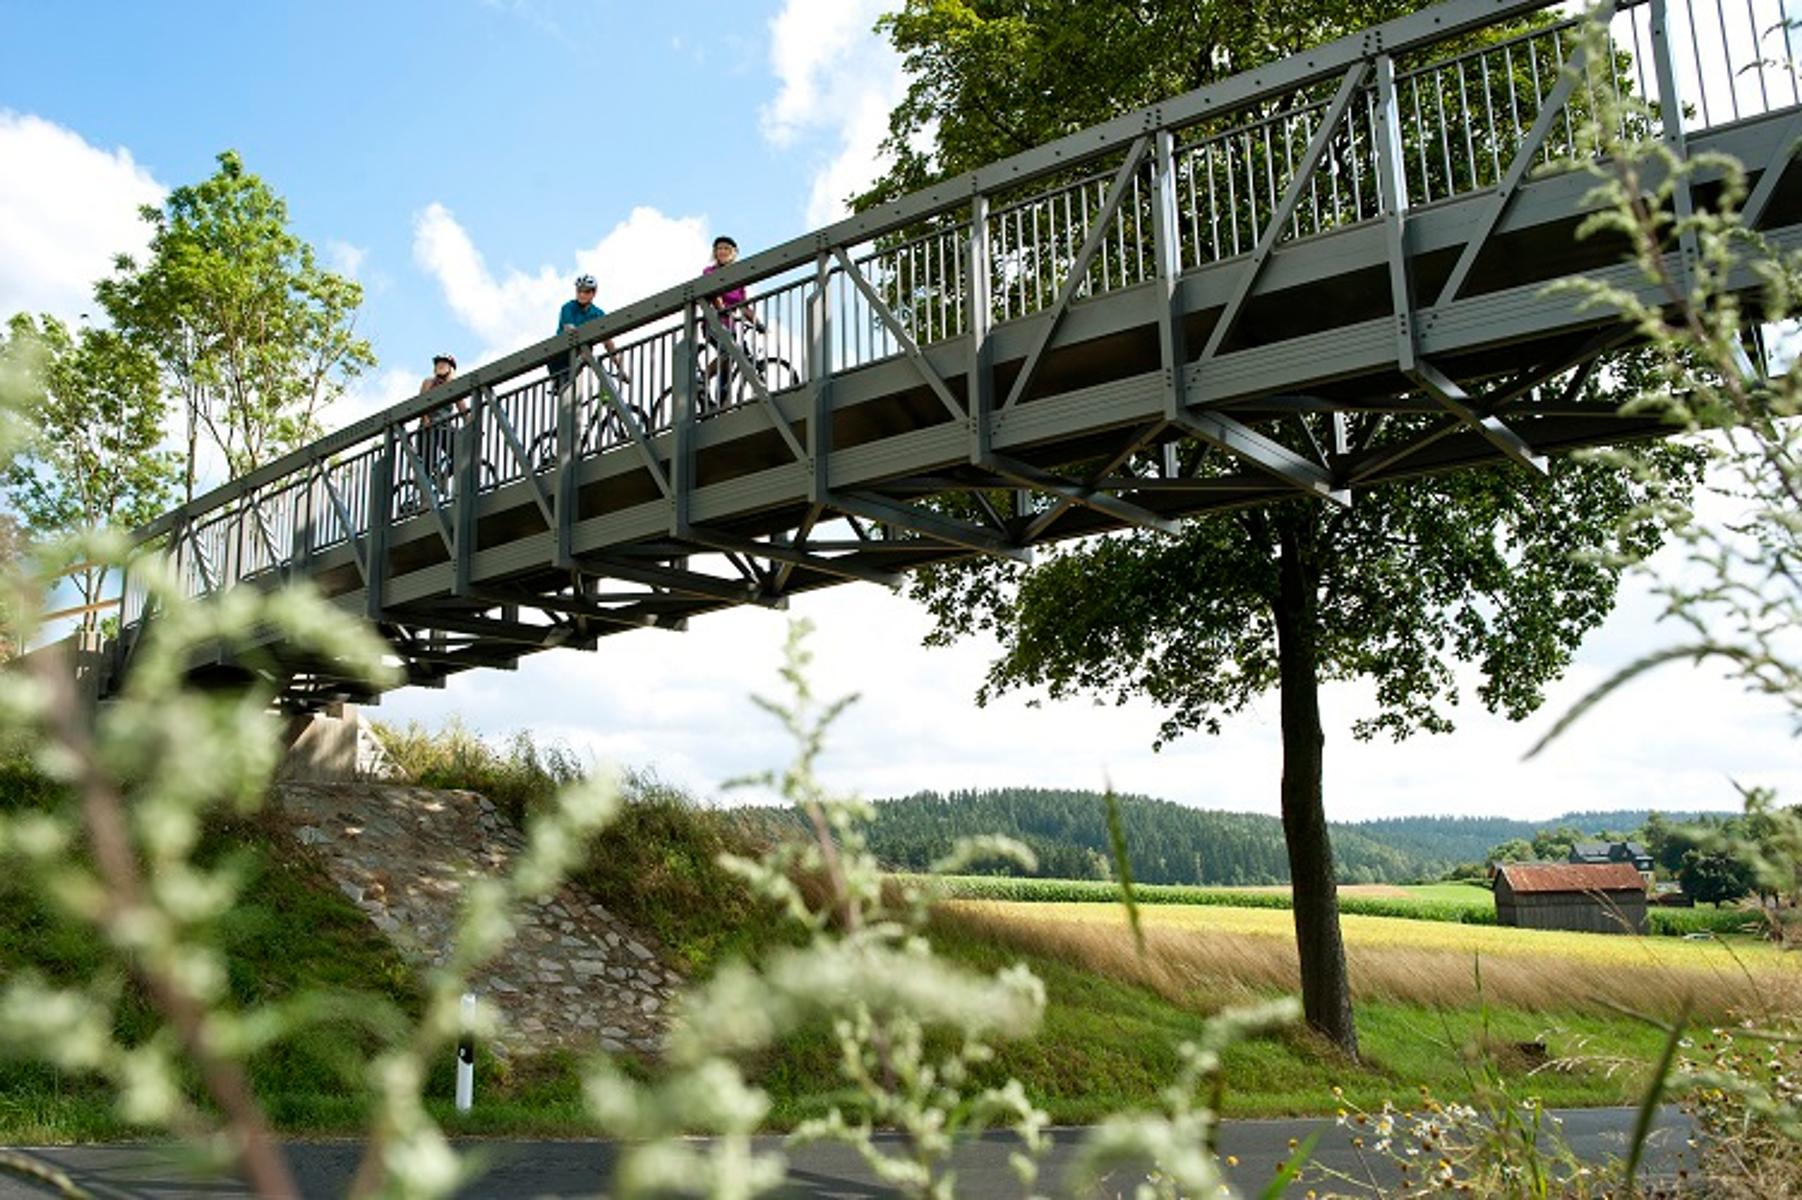     Der Brückenradweg Bayern-Böhmen ist&nbsp;56 Km lang und führt zwischen Fichtelberg und der tschechischen Stadt Asch durch die Landschaft des Fichtelgebirges.
                 title=